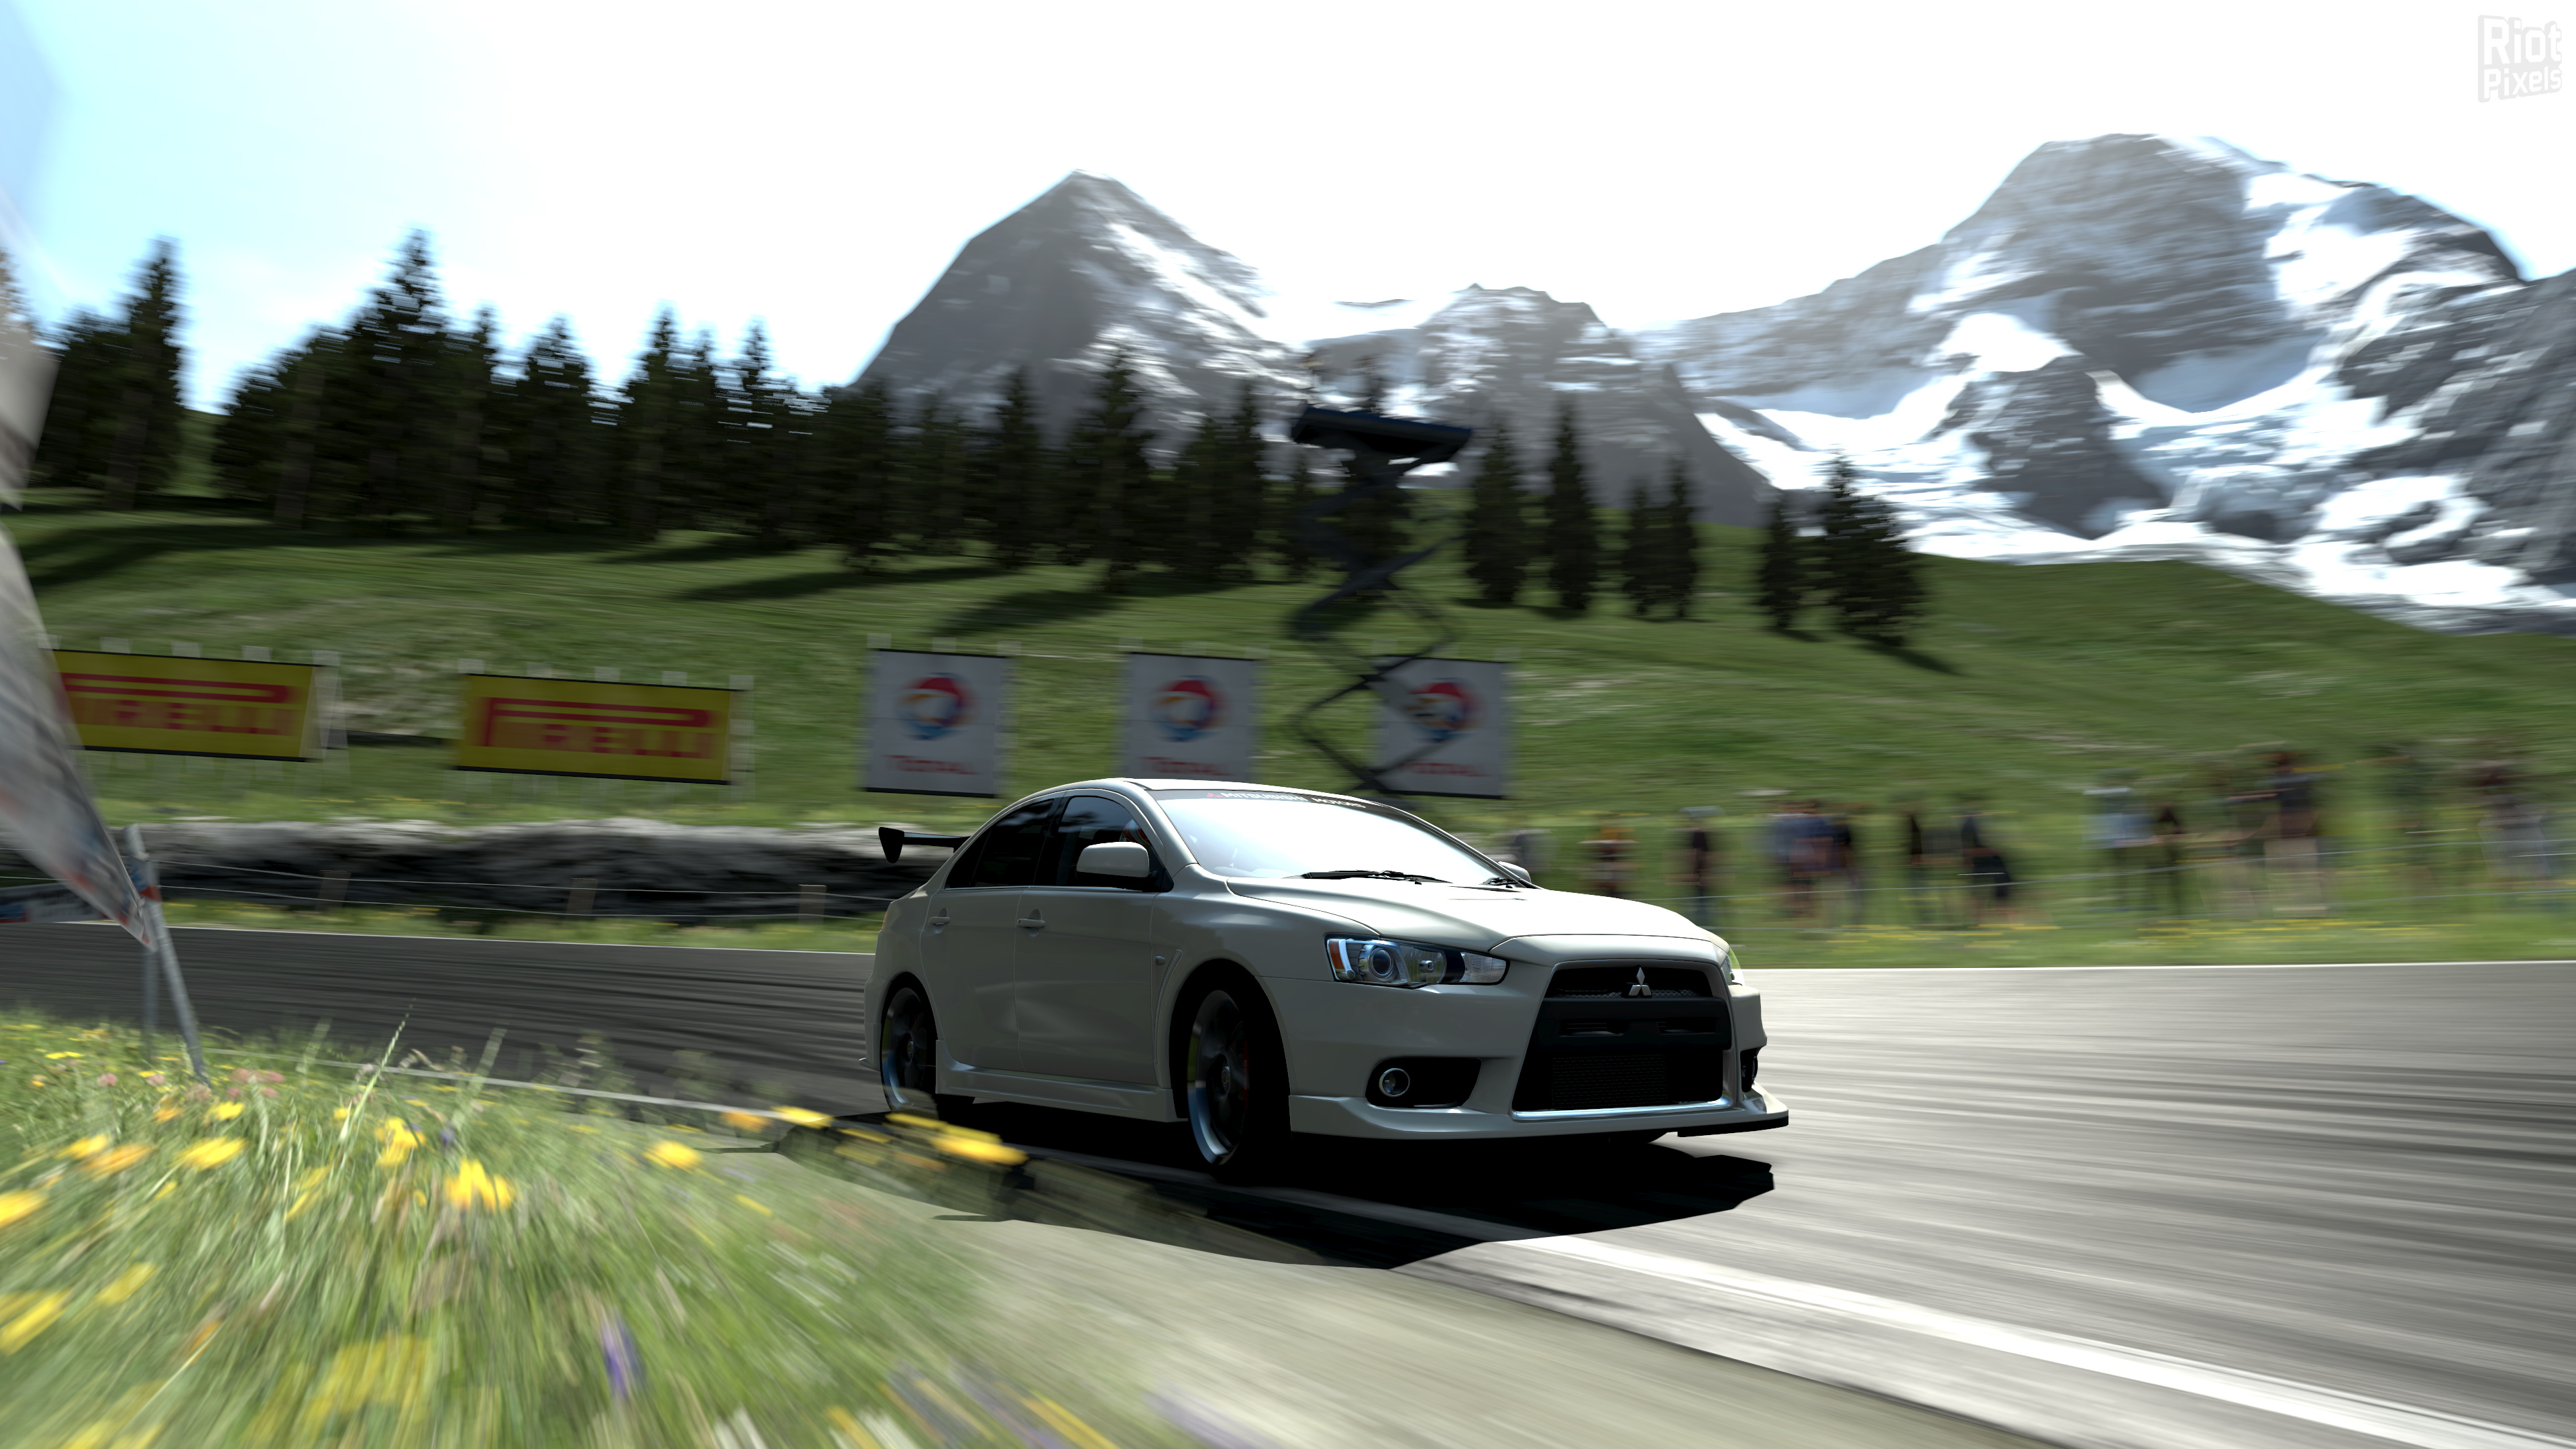 Gran Turismo 5 Prologue - game screenshots at Riot Pixels, images